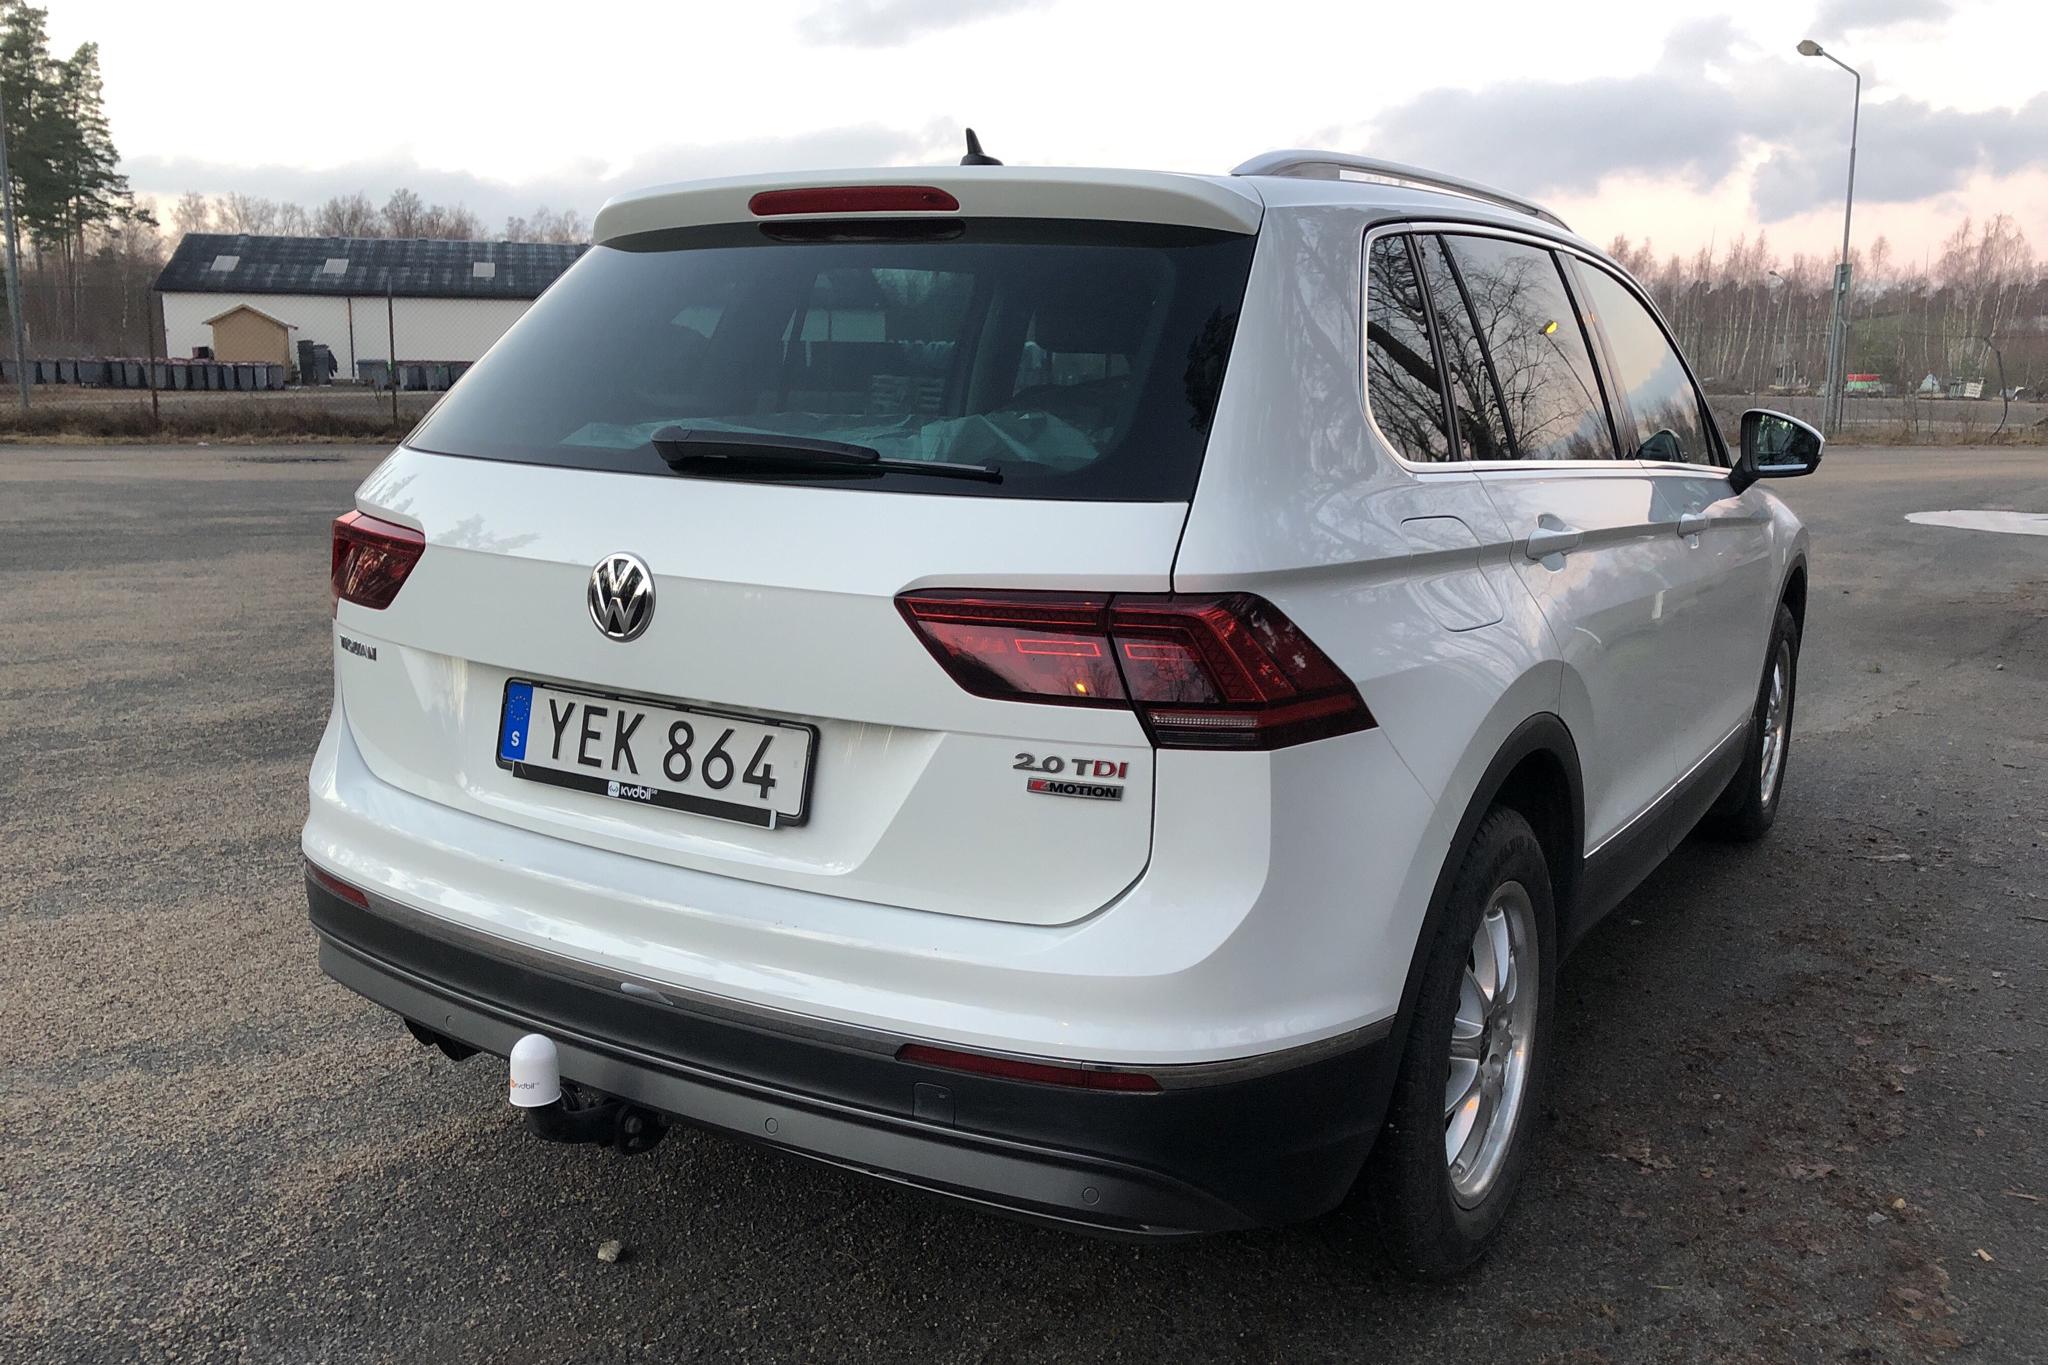 VW Tiguan 2.0 TDI 4MOTION (190hk) - 104 760 km - Automatic - white - 2017